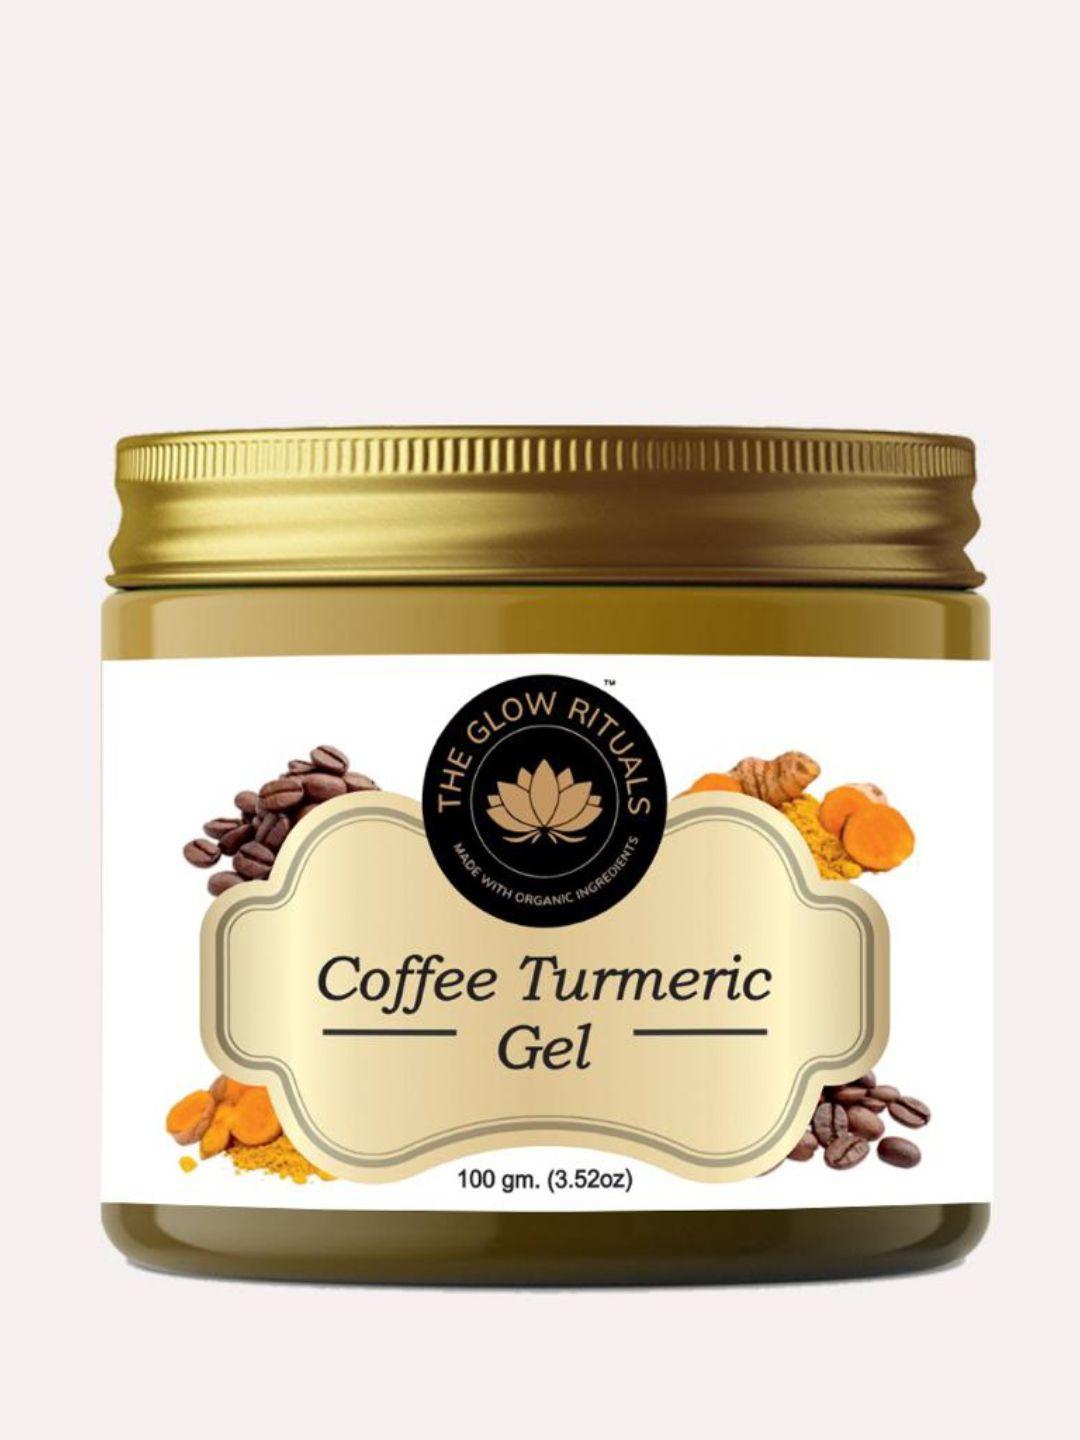 the glow rituals coffee turmeric face gel 100g